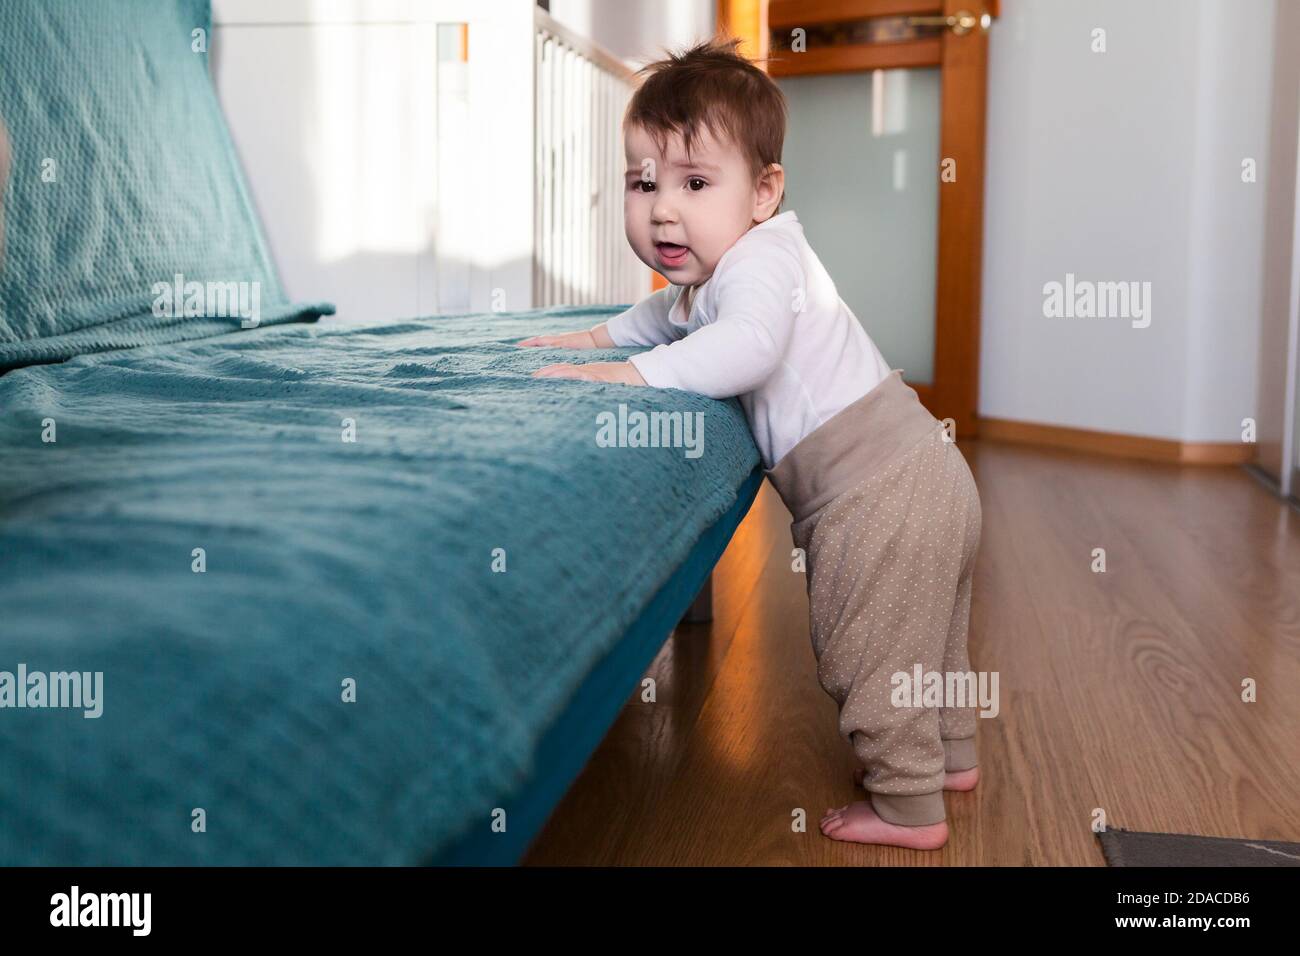 Sieben Monate altes kaukasisches Baby, das auf dem Boden steht, die Hände hält und die Kamera anschaut, das Haushaltszimmer Stockfoto